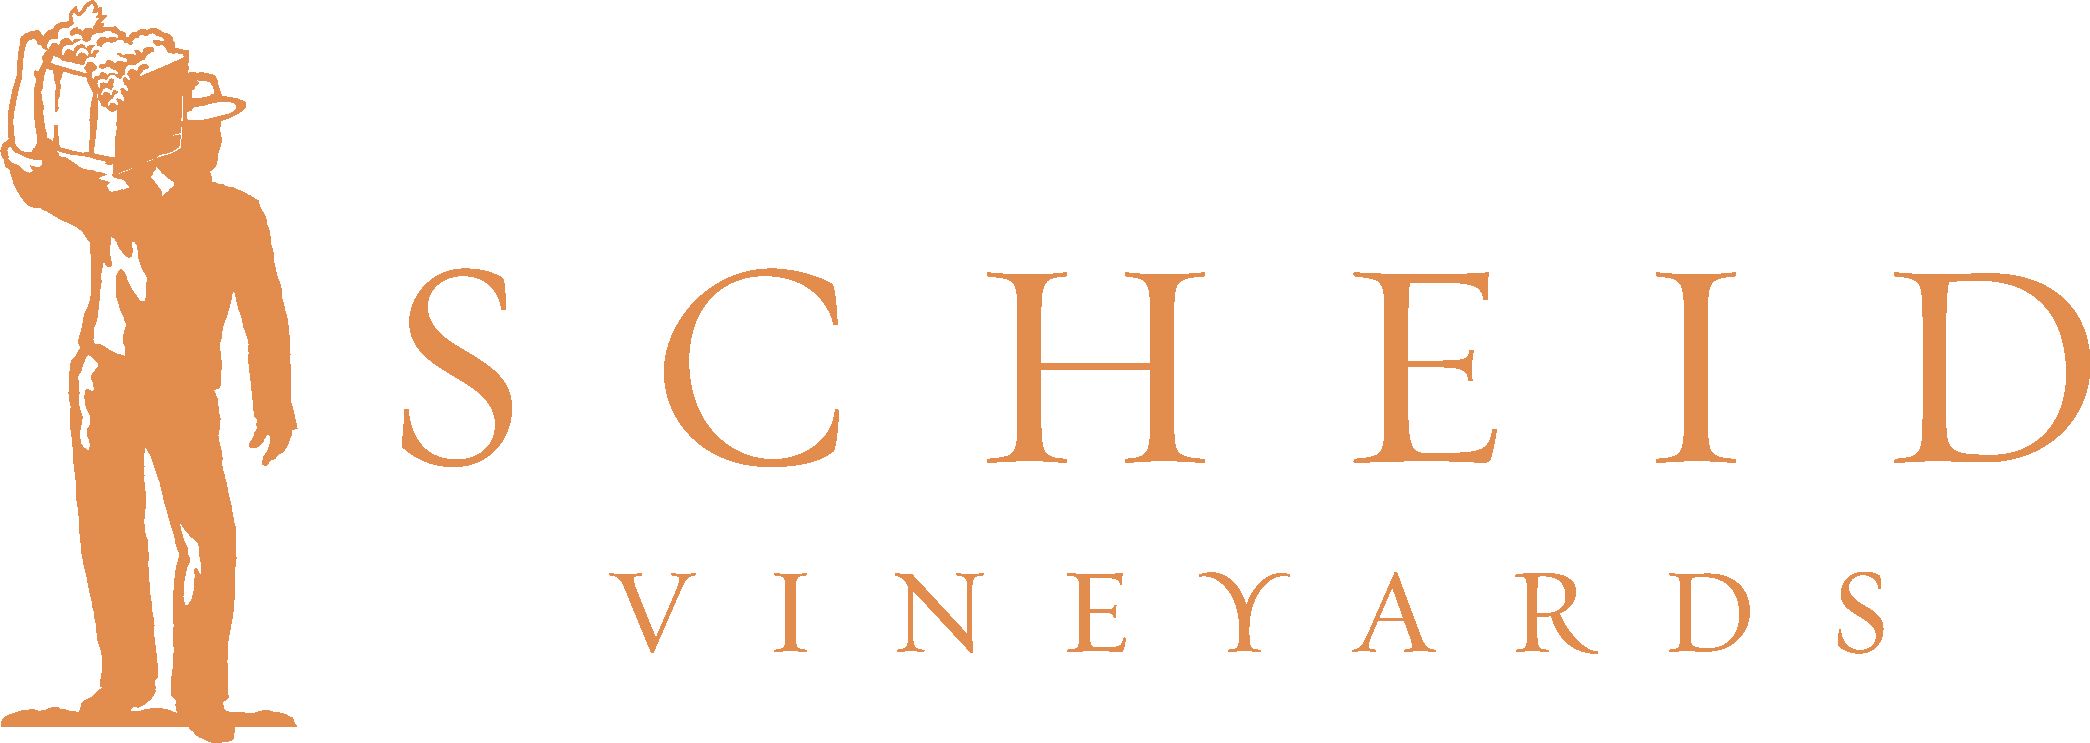 Scheid Vineyards logo in gold